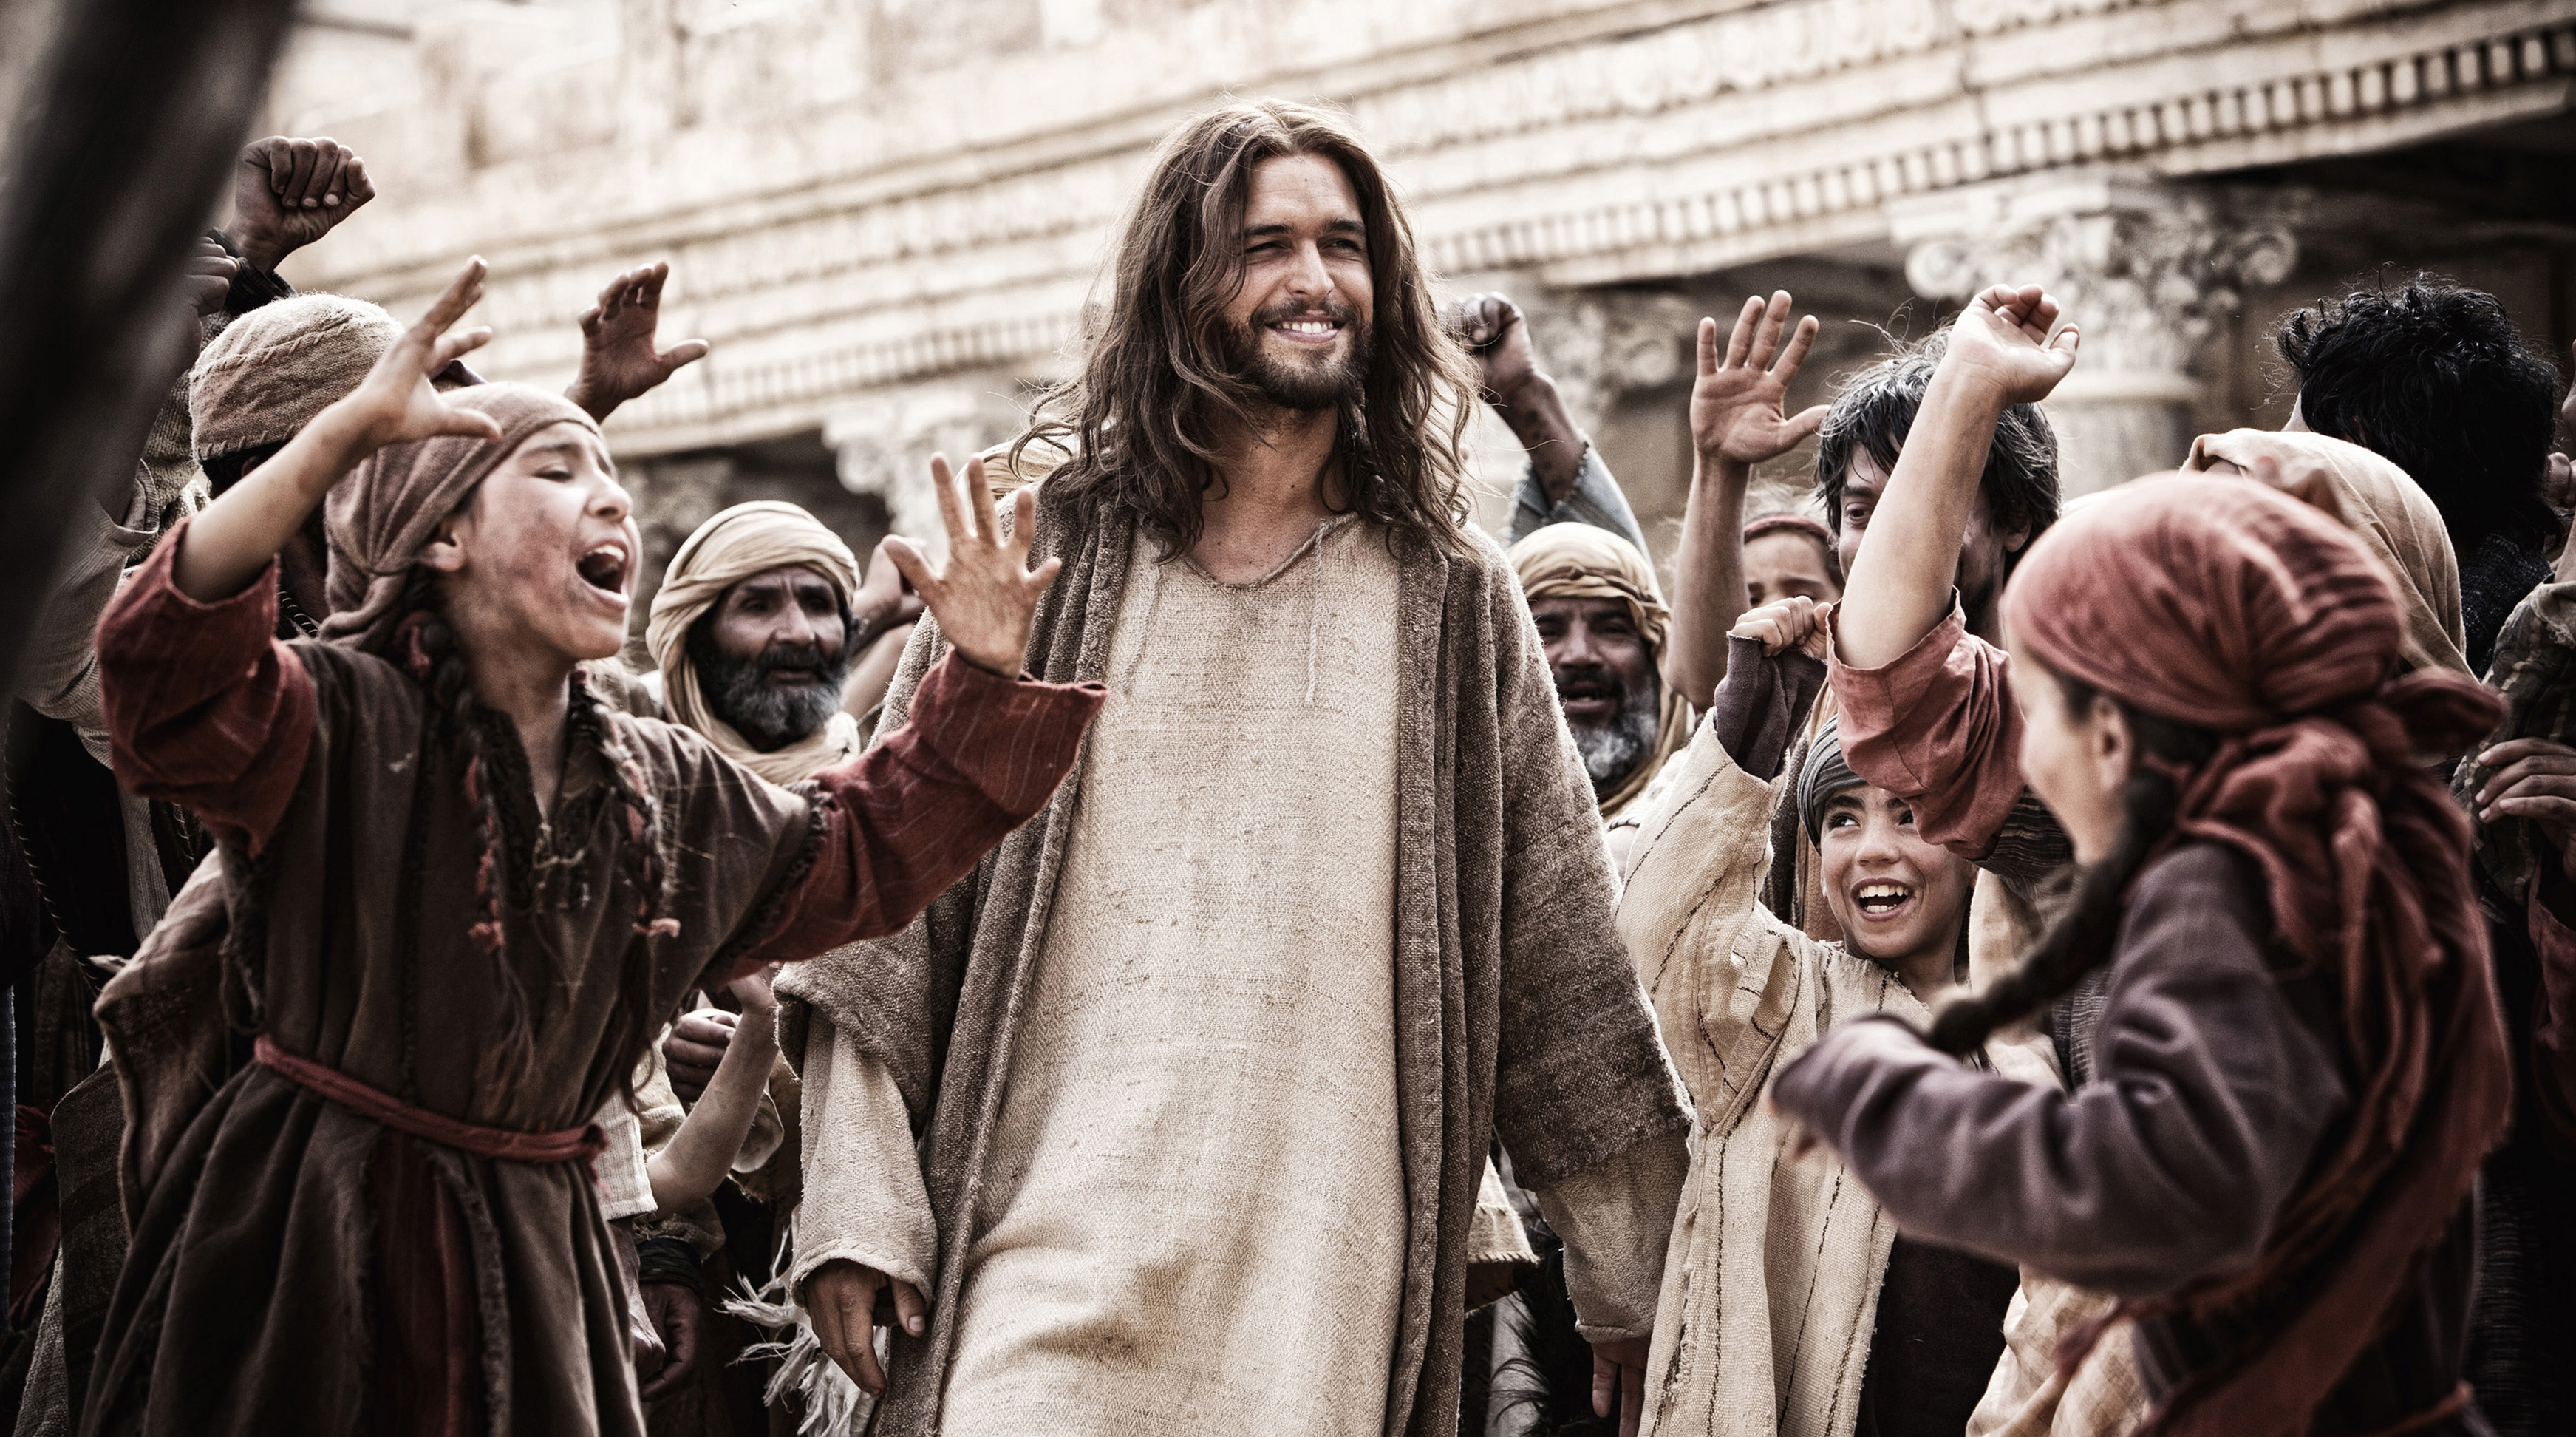 Diogo Morgado as Jesus in "Son of God." (Casey Crafford—20th Century Fox/AP)